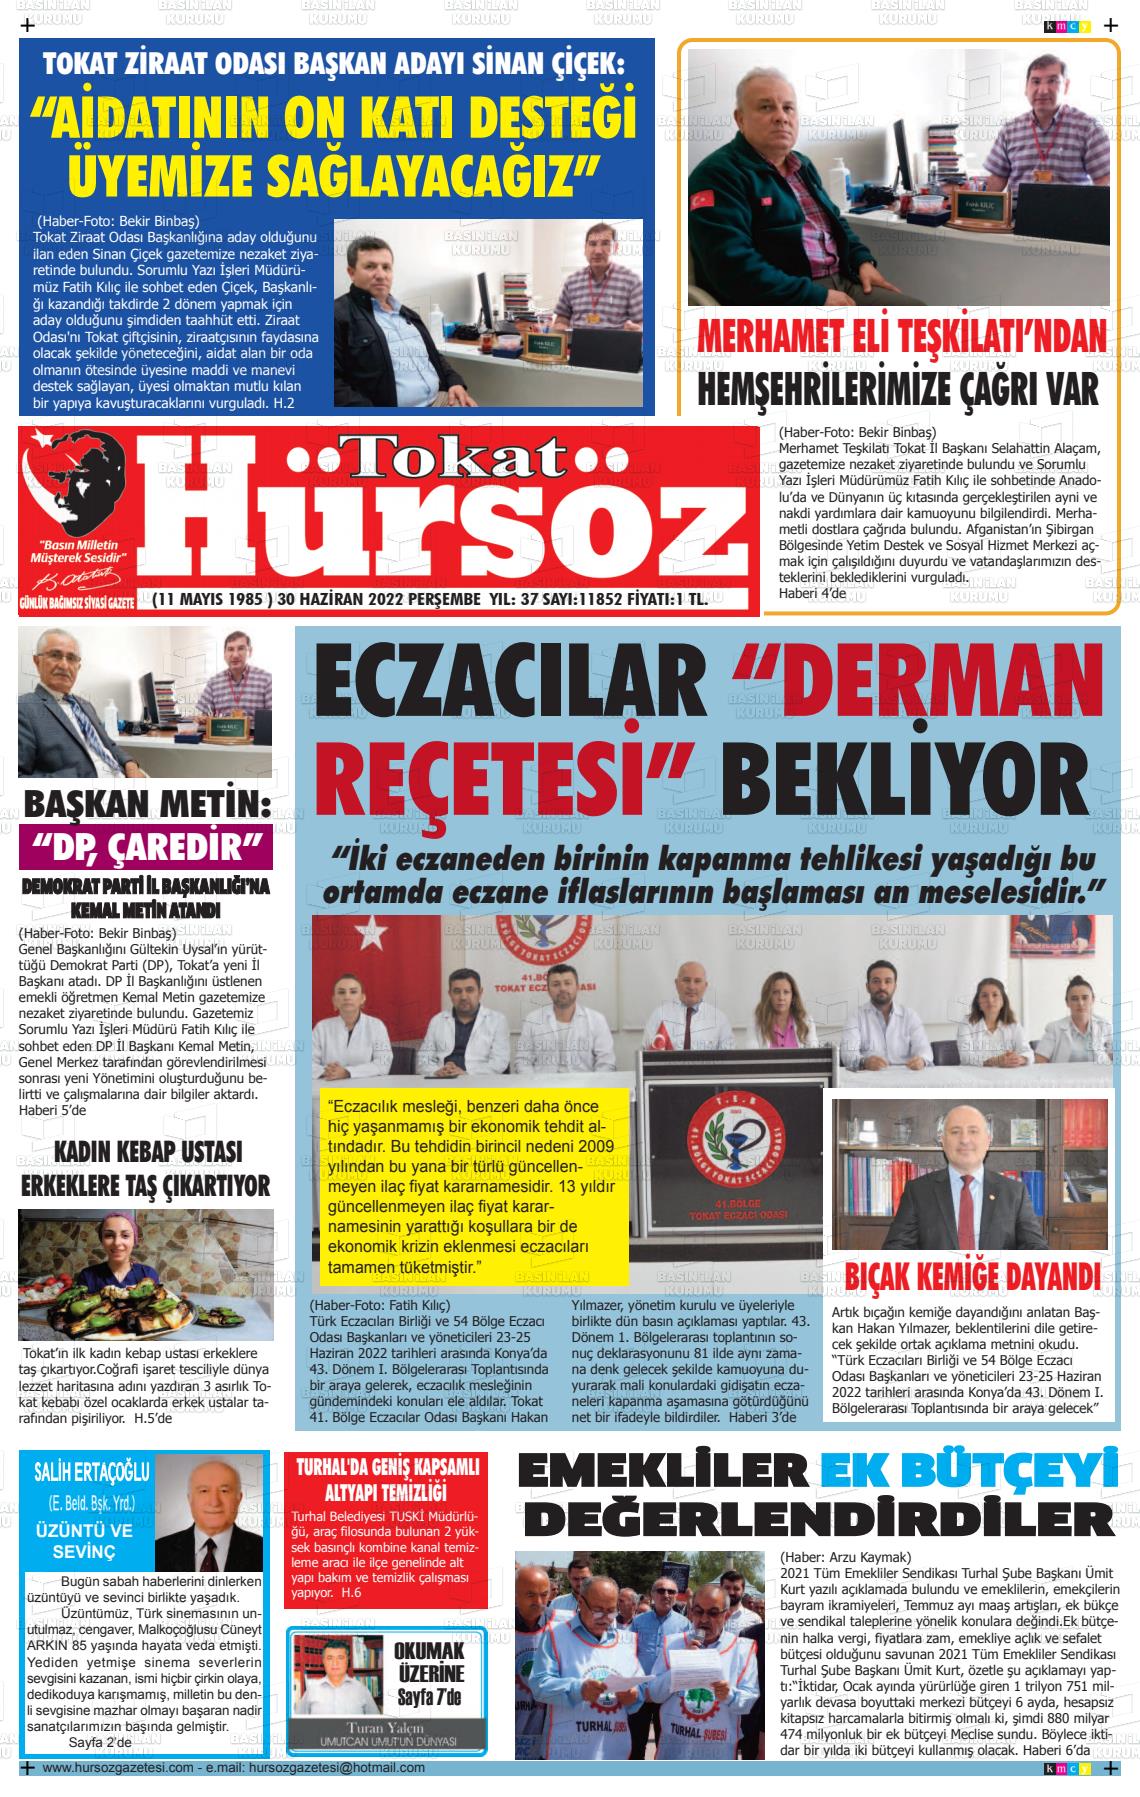 02 Temmuz 2022 Hürsöz Gazete Manşeti